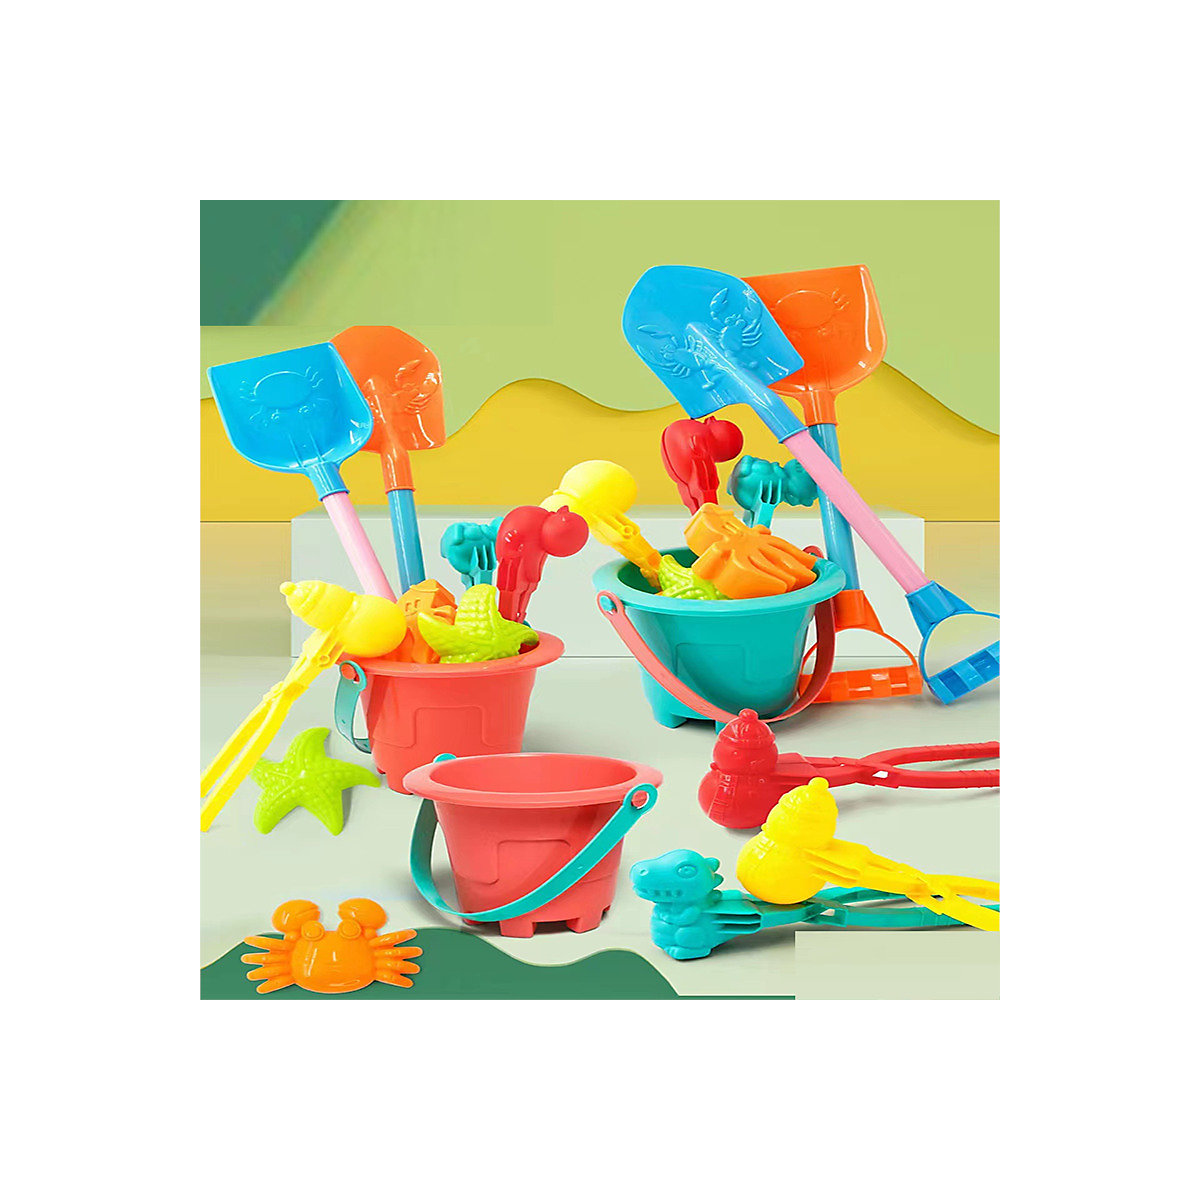 enbaoxin 1 sets Zufälliges Strandspielzeug-Set für Kinder 1 sets Zufälliges Strandwasserspielzeug für Kinder